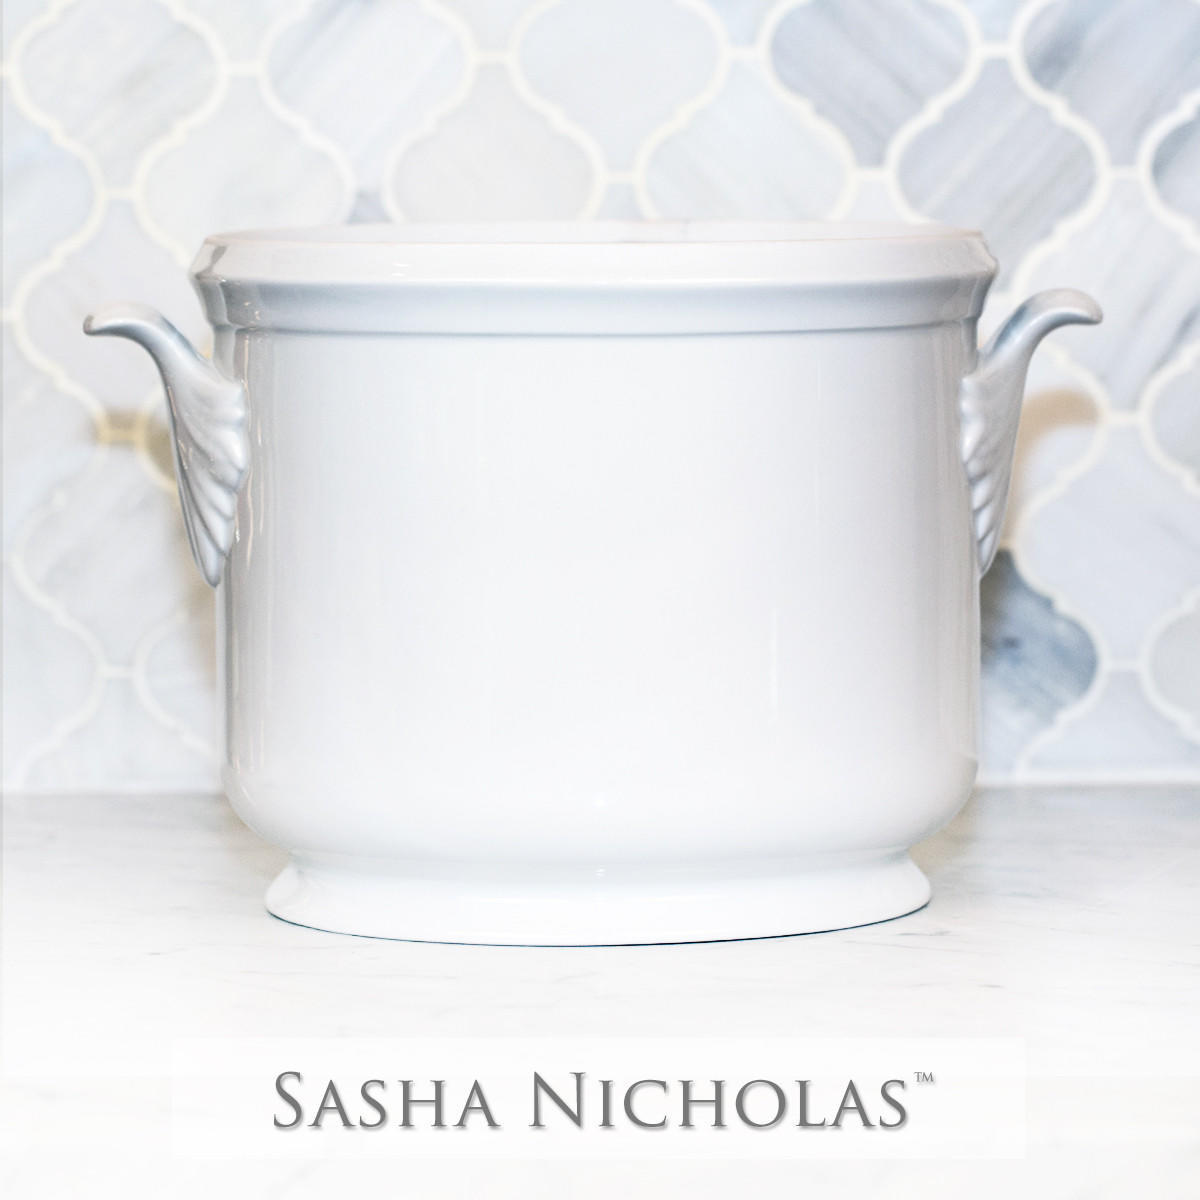 Champagne Bucket, SNPB103, Sasha Nicholas